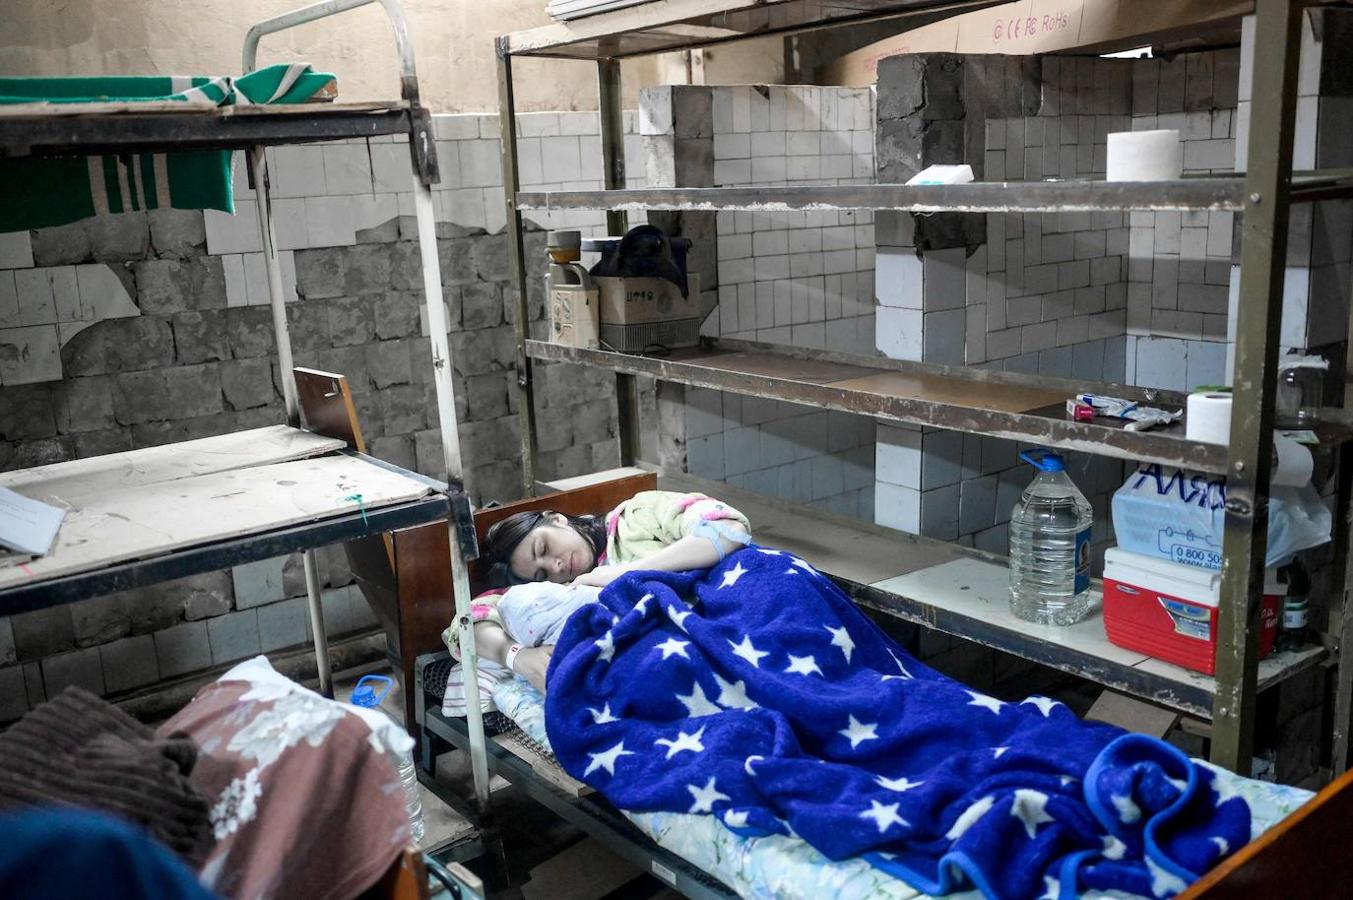 Hospitales bajo tierra. Cuando la vida se hace imposible en la superficie, los ucranianos buscan alternativas. Los centros sanitarios ahora son sótanos y las UCI se levantan entre estanterías de búnkeres.